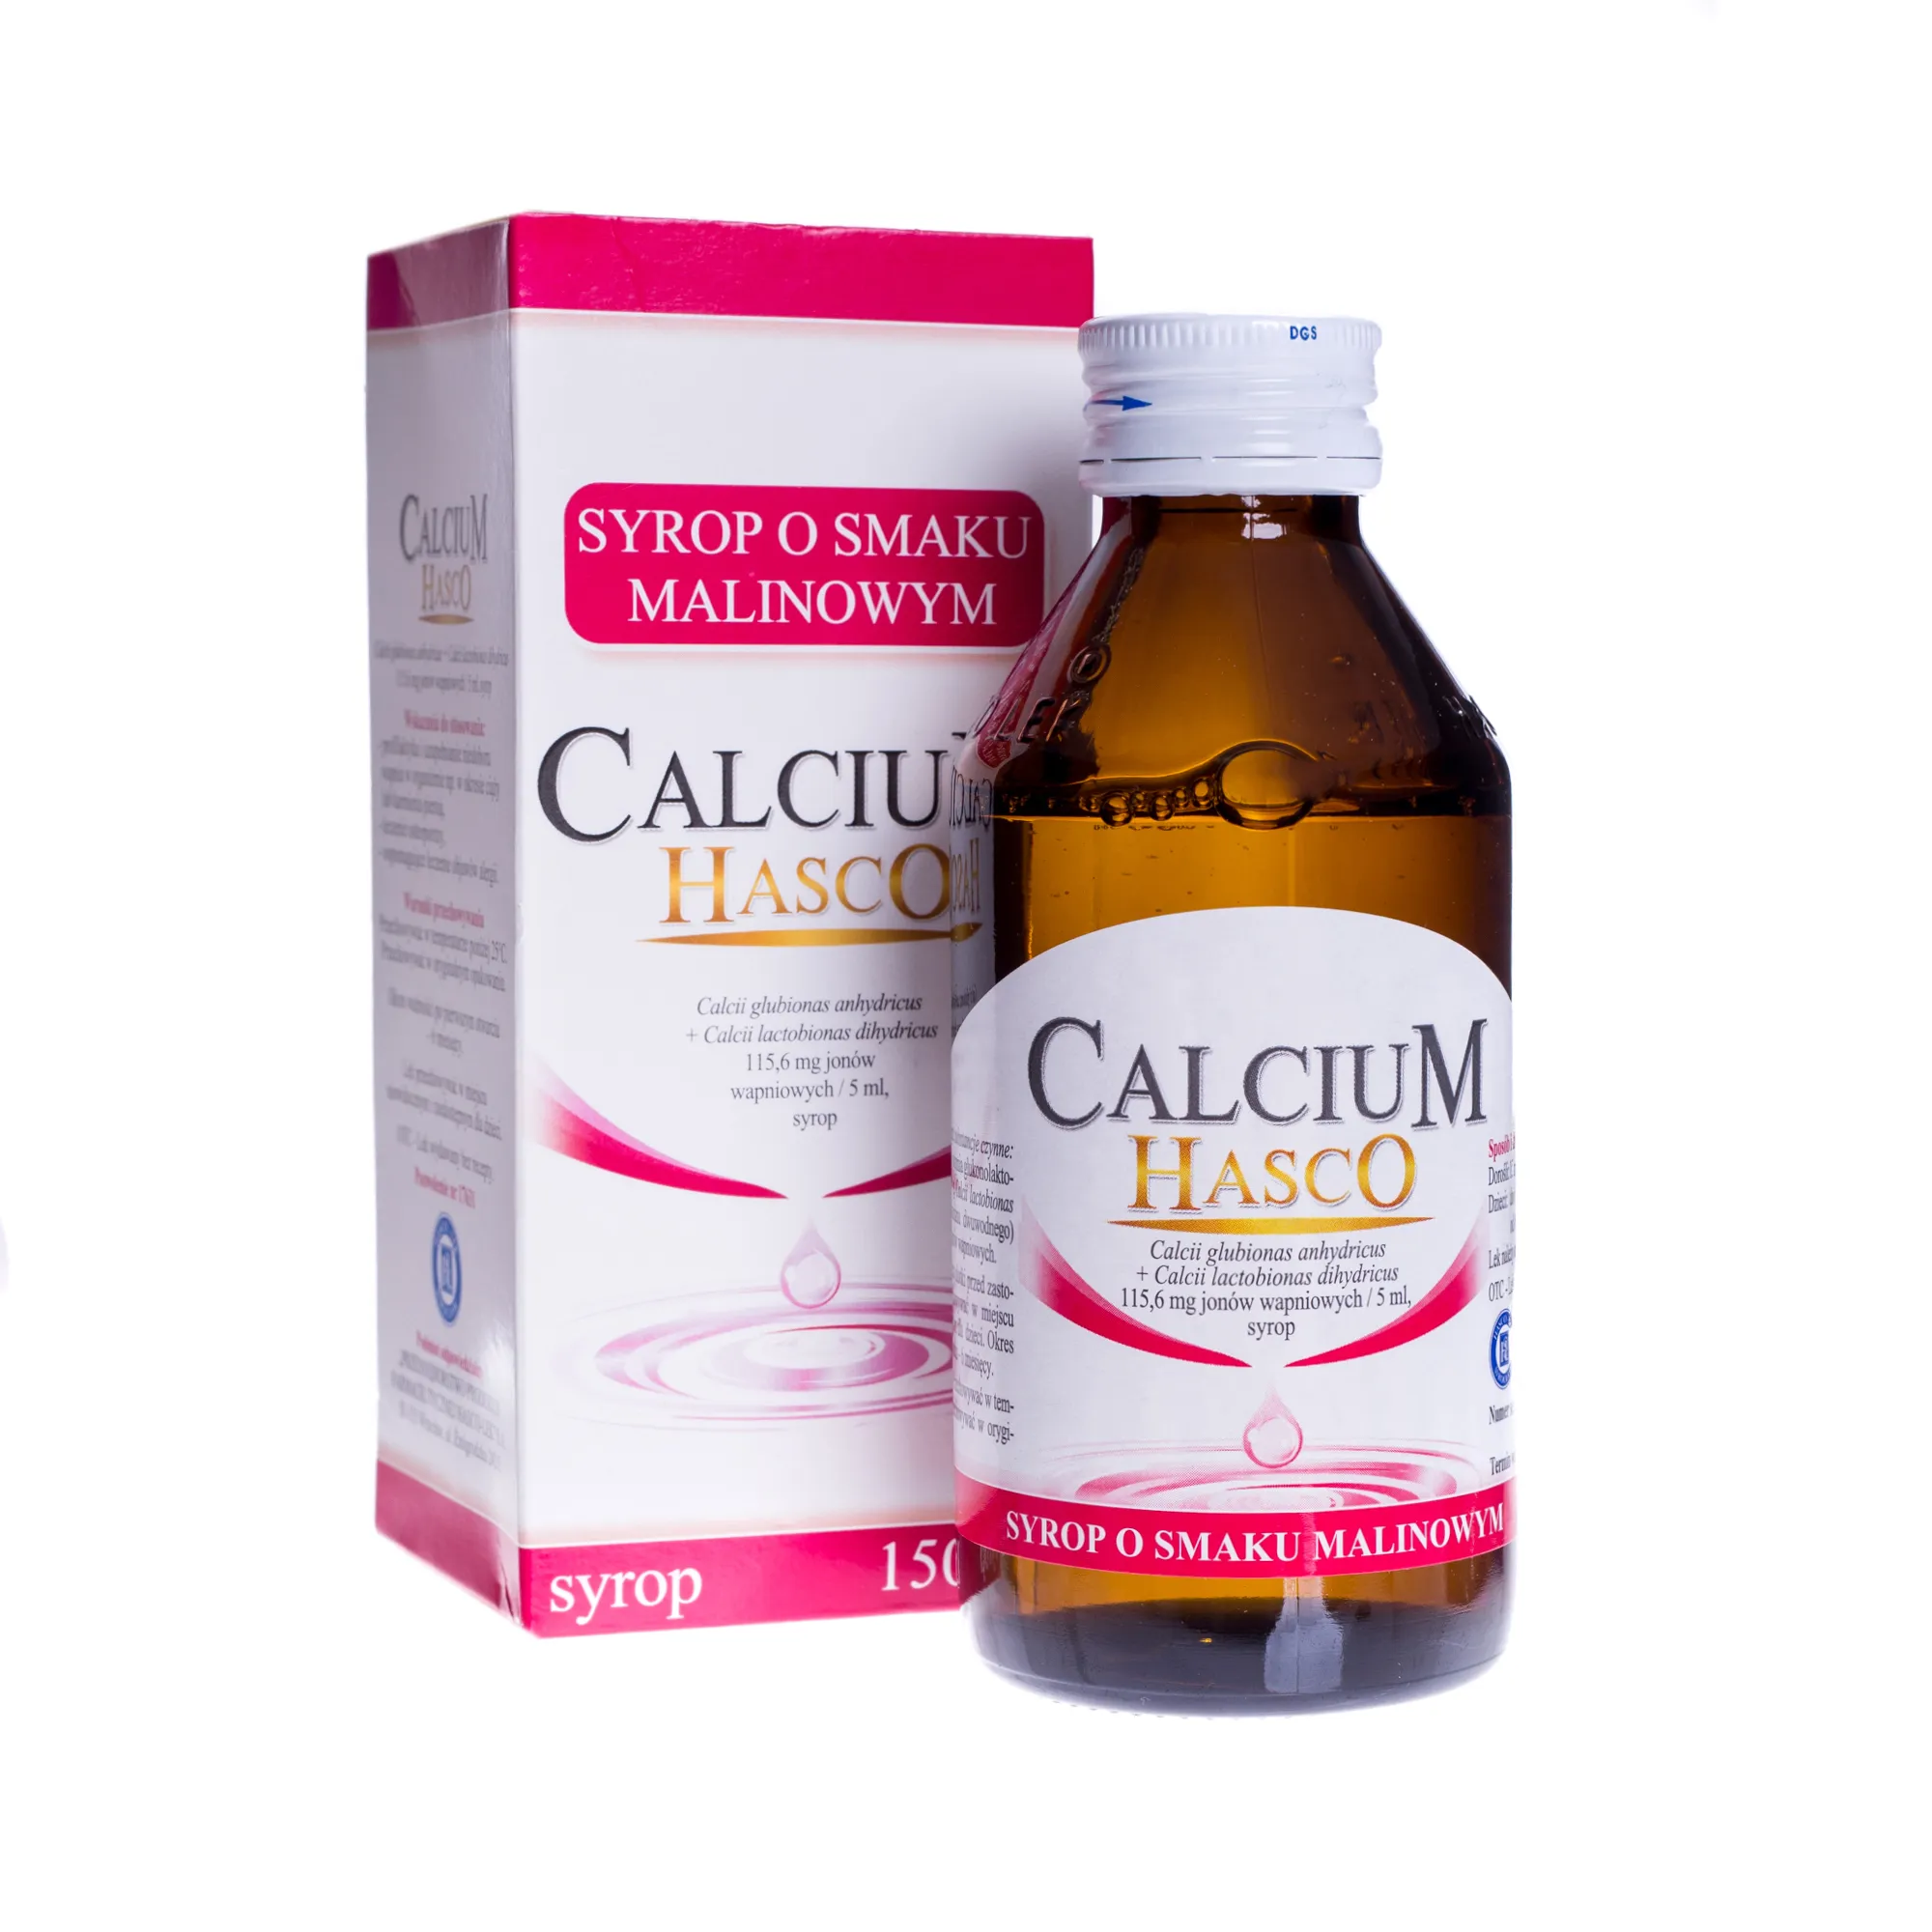 Calcium Hasco, syrop o smaku malinowym, 150 ml